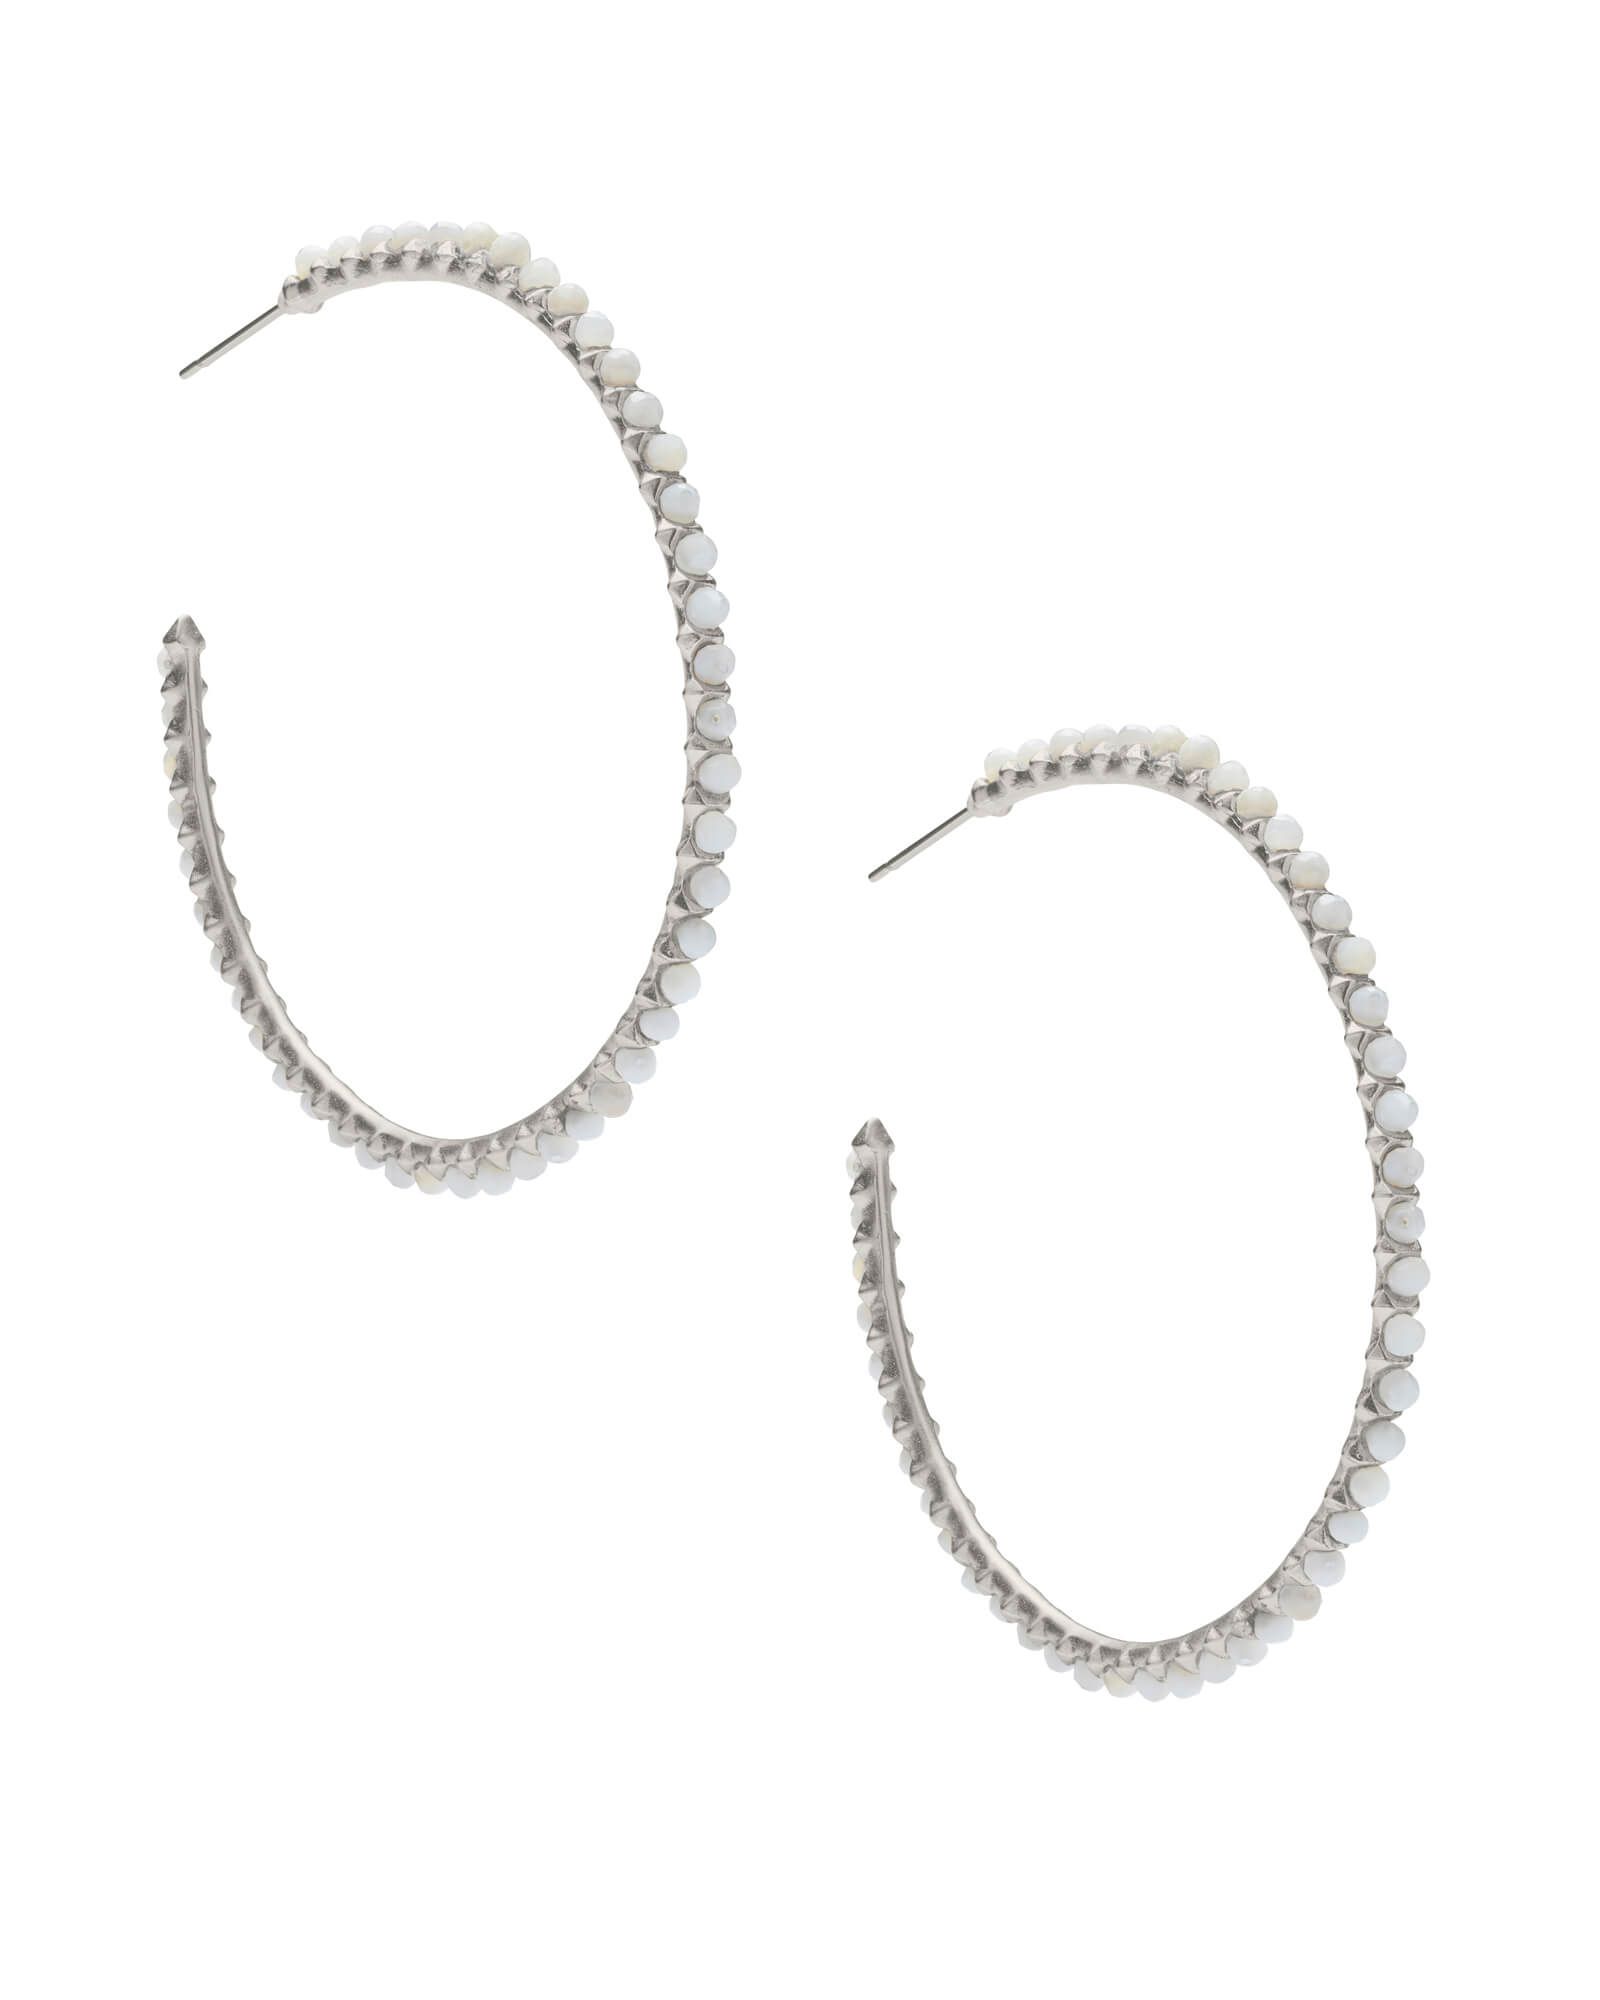 Birdie Silver Hoop Earrings in Ivory Pearl | Kendra Scott